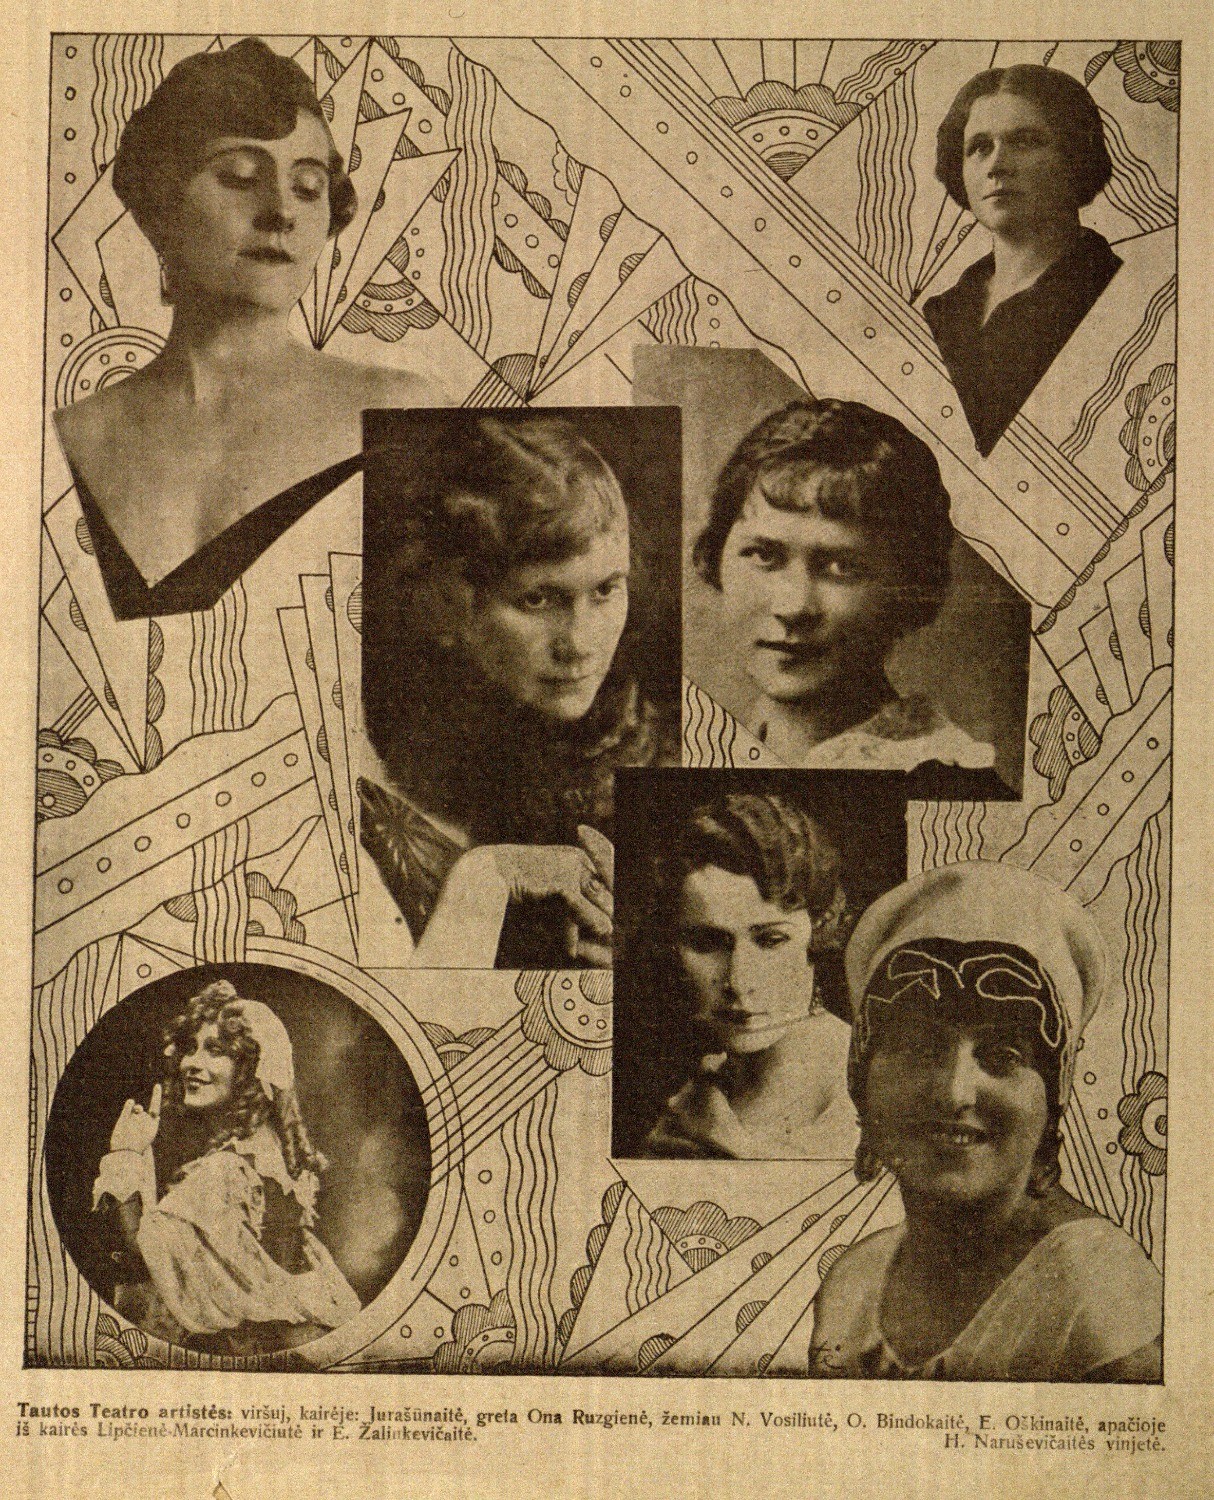 Tautos Teatro artistės, viršuj kairėje: [Nastė] Jurašiūnaitė, greta Ona Ruzgienė, žemiau N. Vosyliūtė, O. Bindokaitė, E. Oškinaitė, apačioje iš kairės [Marija] Lipčienė-Marcinkevičiūtė ir E. Žalinkevičaitė: H. Naruševičiūtės vinjetė // Naujas žodis. – 1929, Nr. 10/11, p. 1.